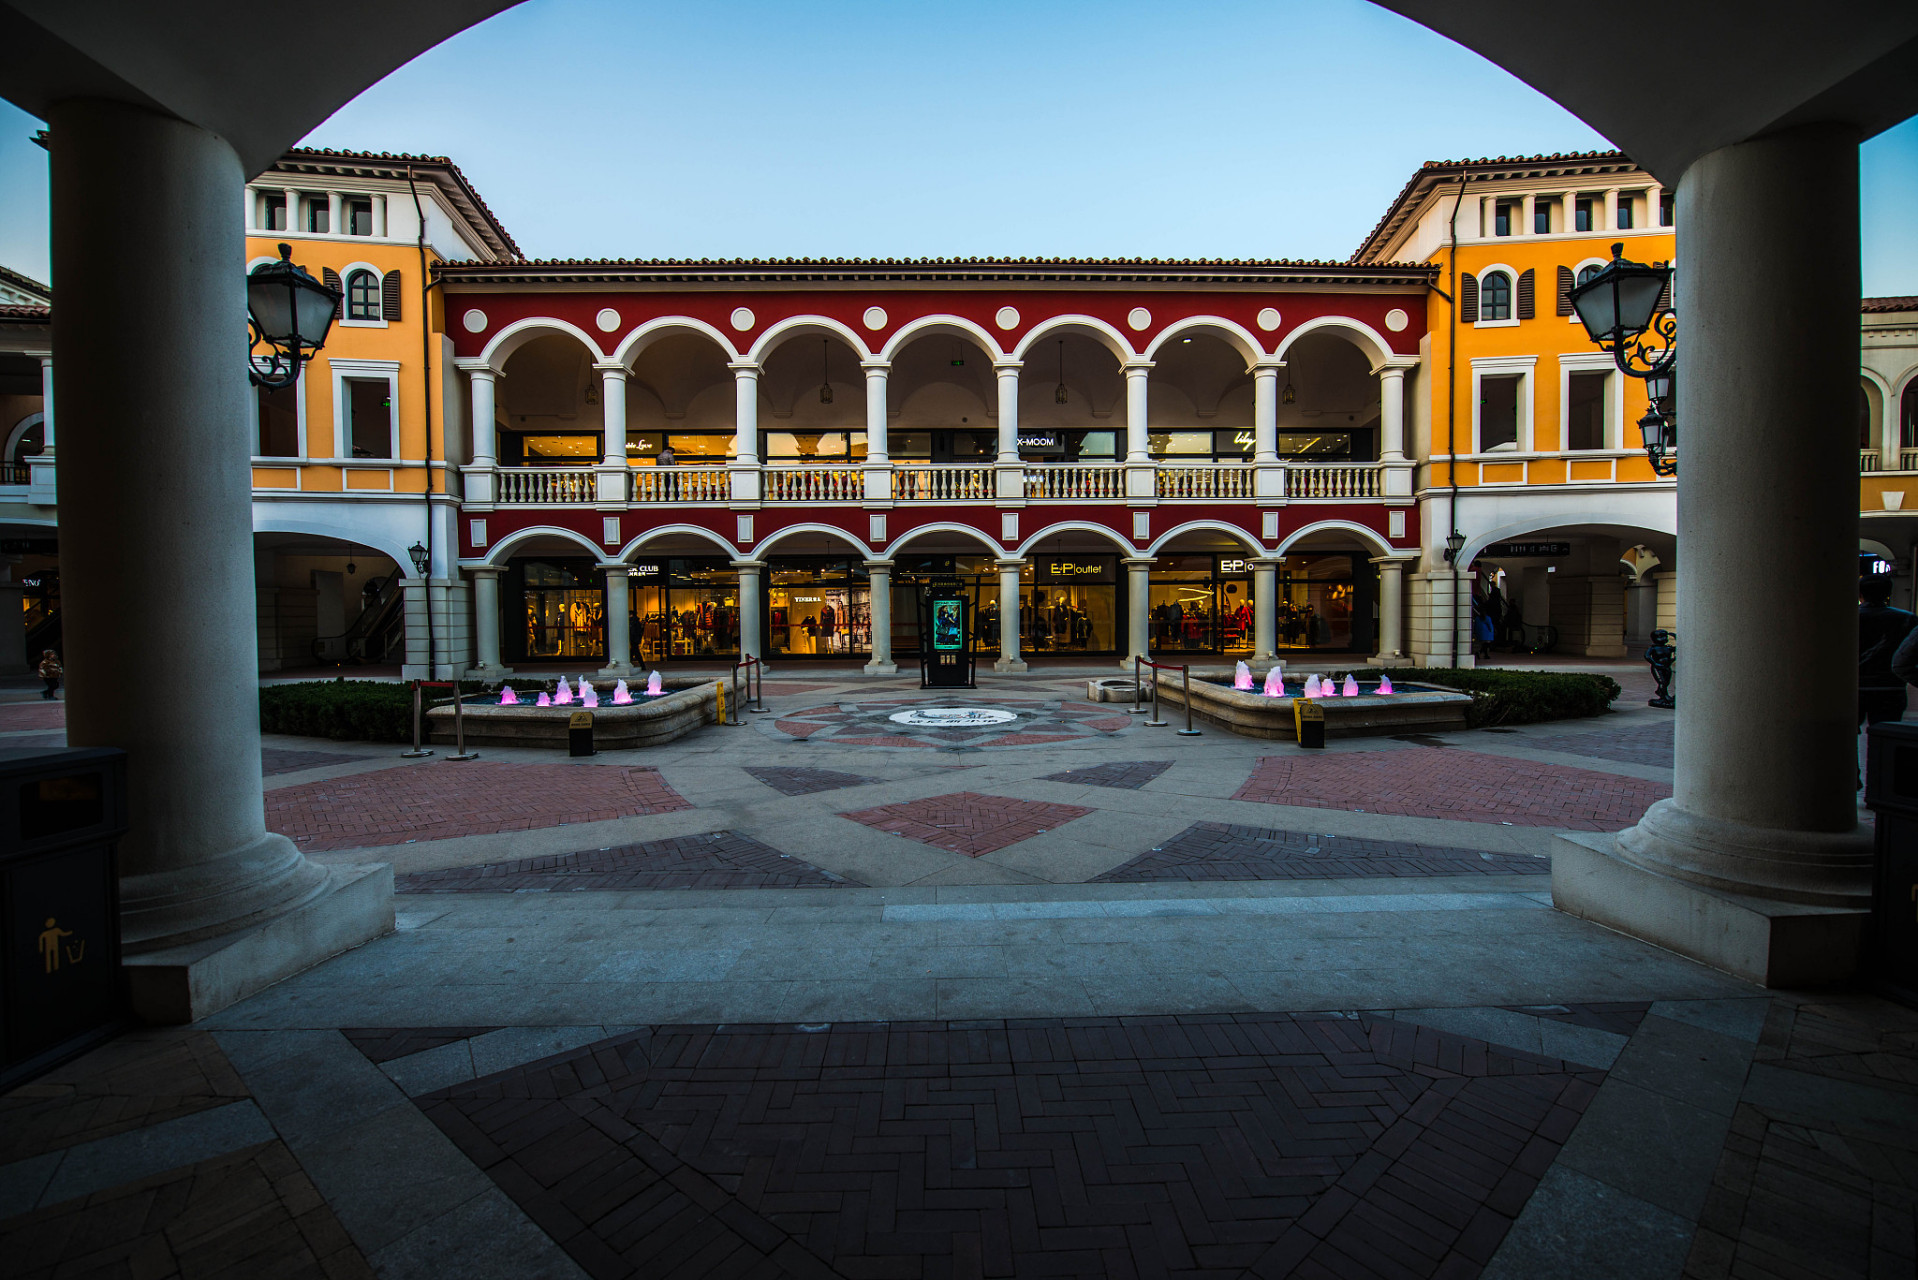 成都佛罗伦萨小镇是西南地区首座纯意大利风格的大型高端名品折扣购物